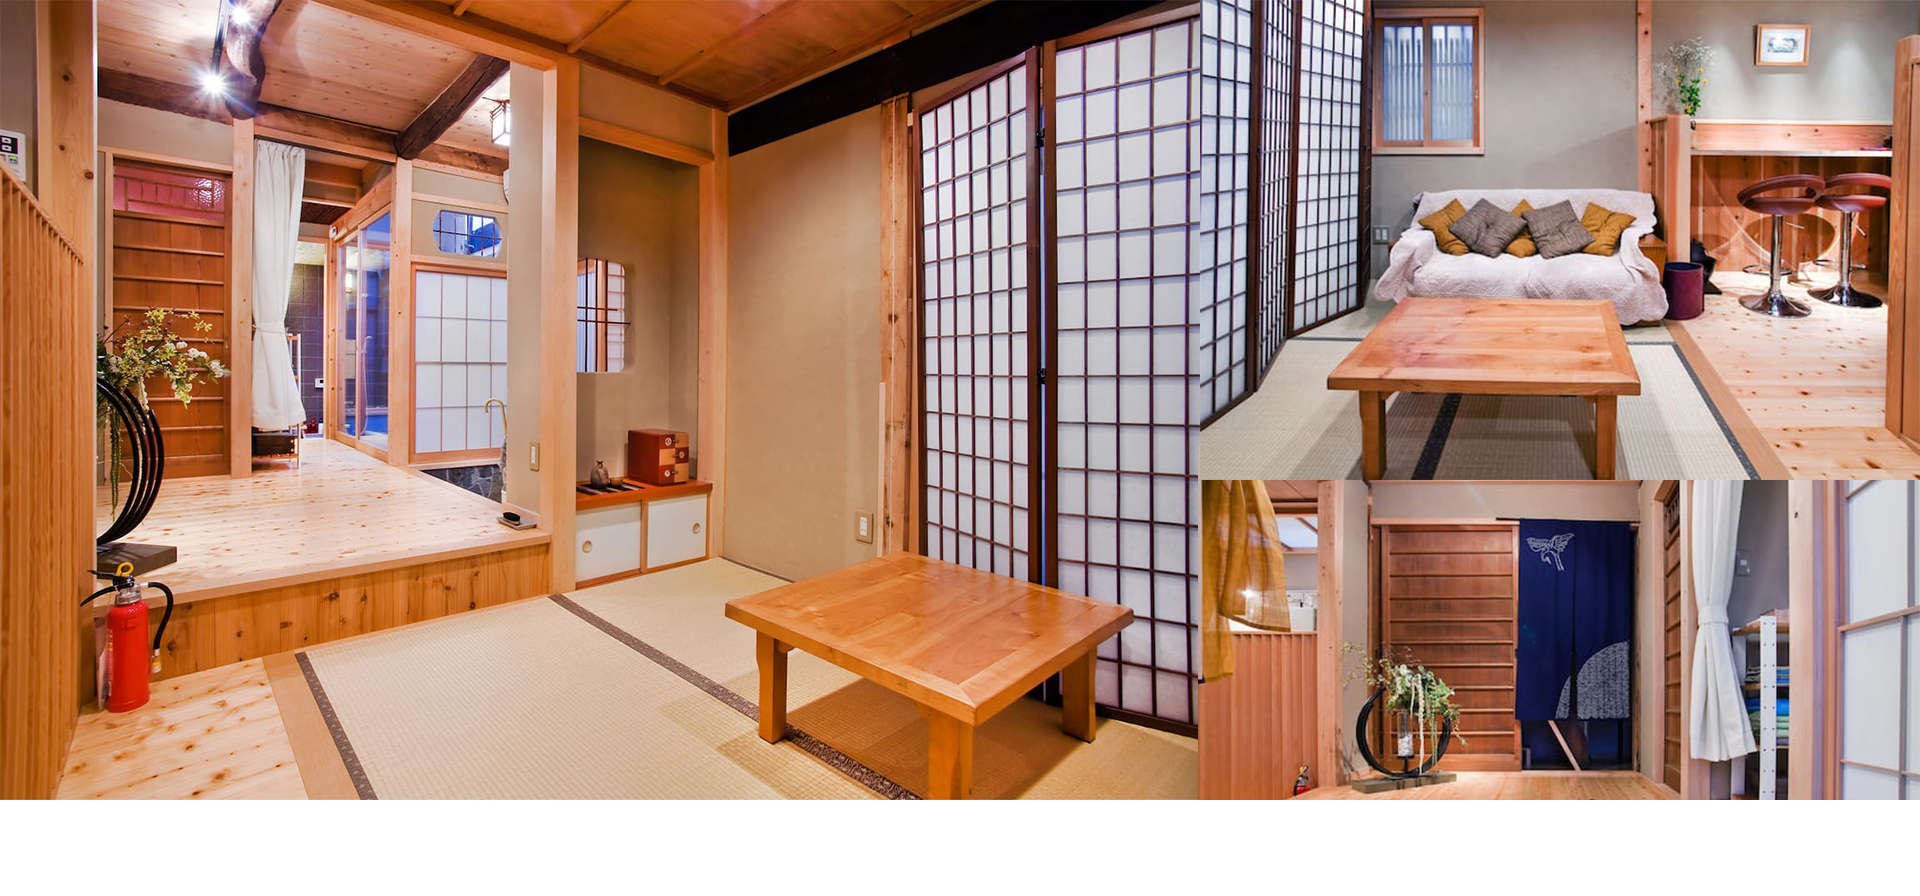 京都の町家旅館「天の川」室内光景